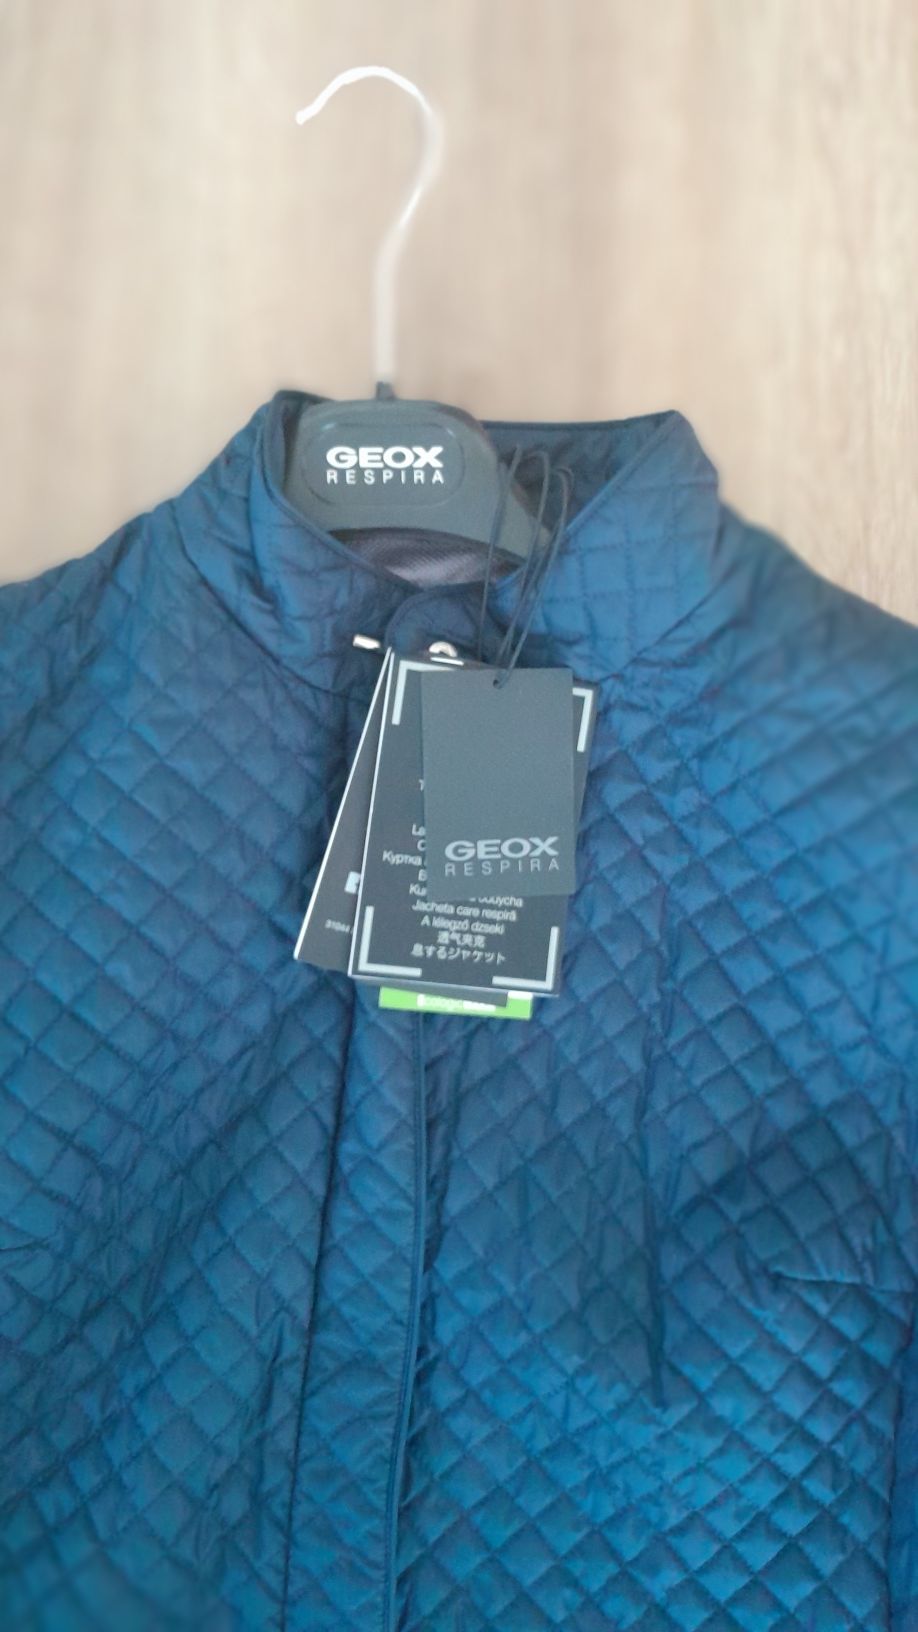 Geox Respira damska kurtka przejściowa